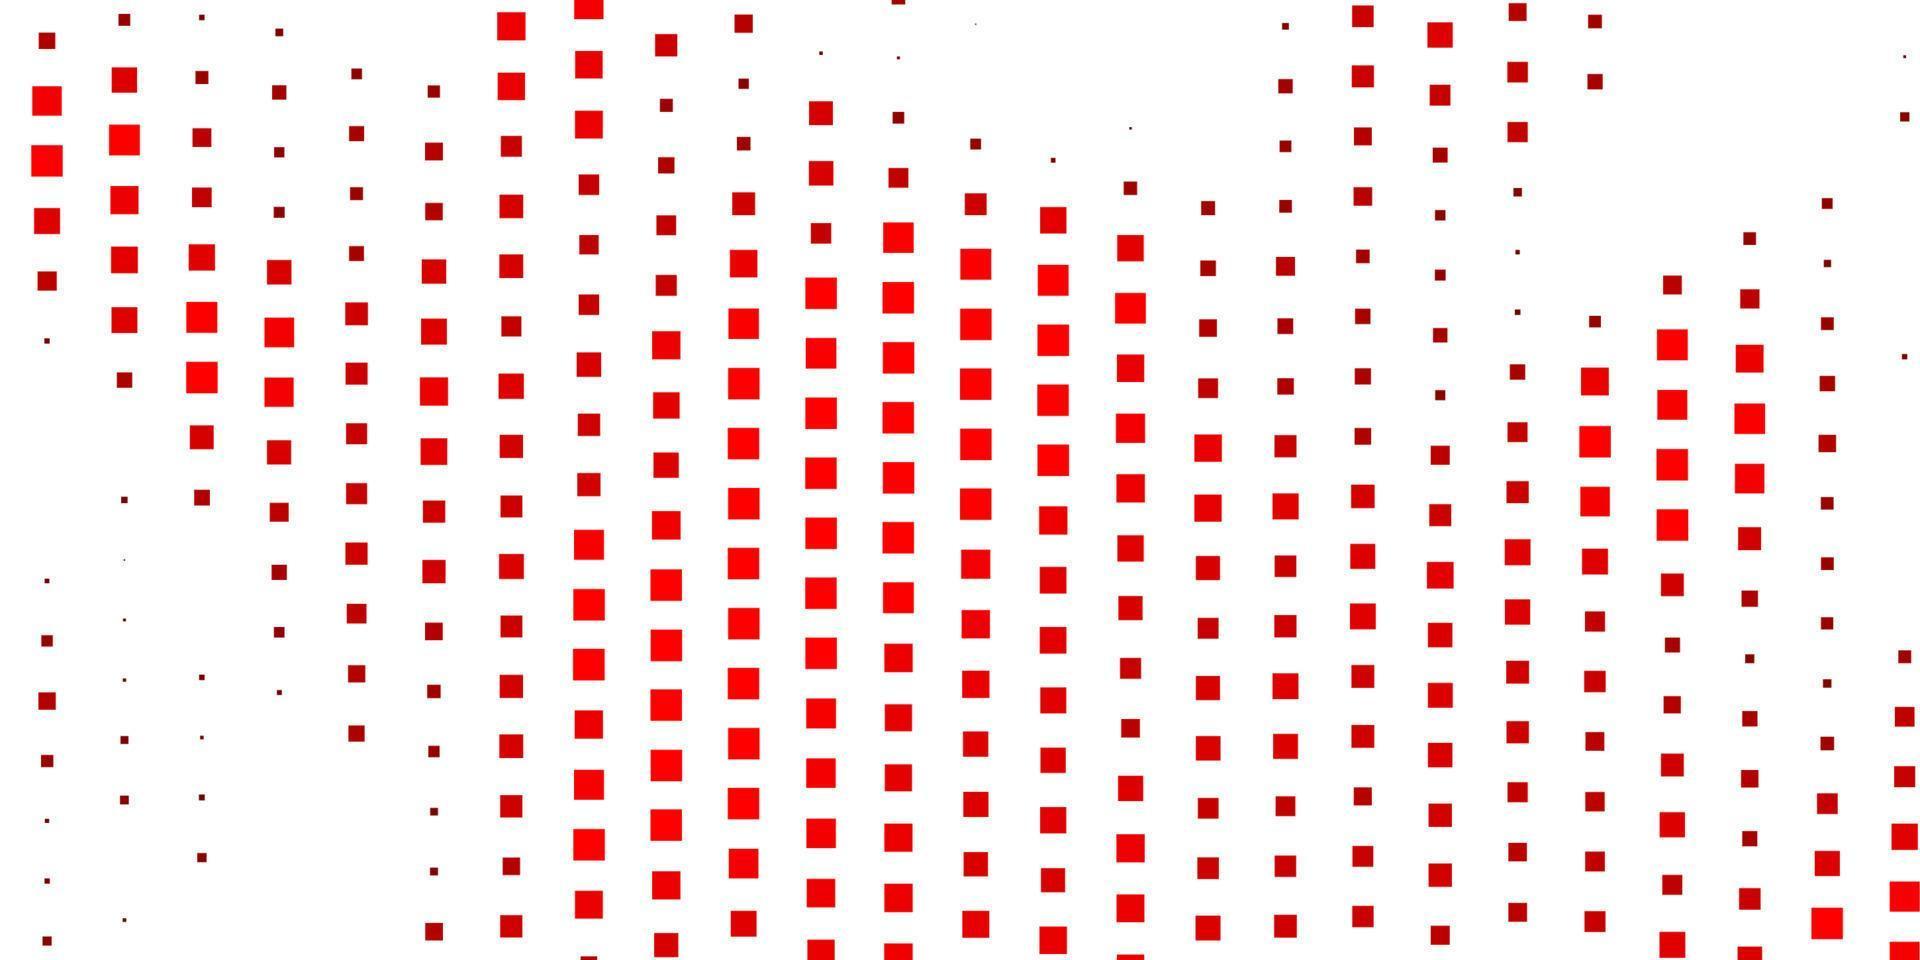 modelo de vetor vermelho escuro em retângulos.